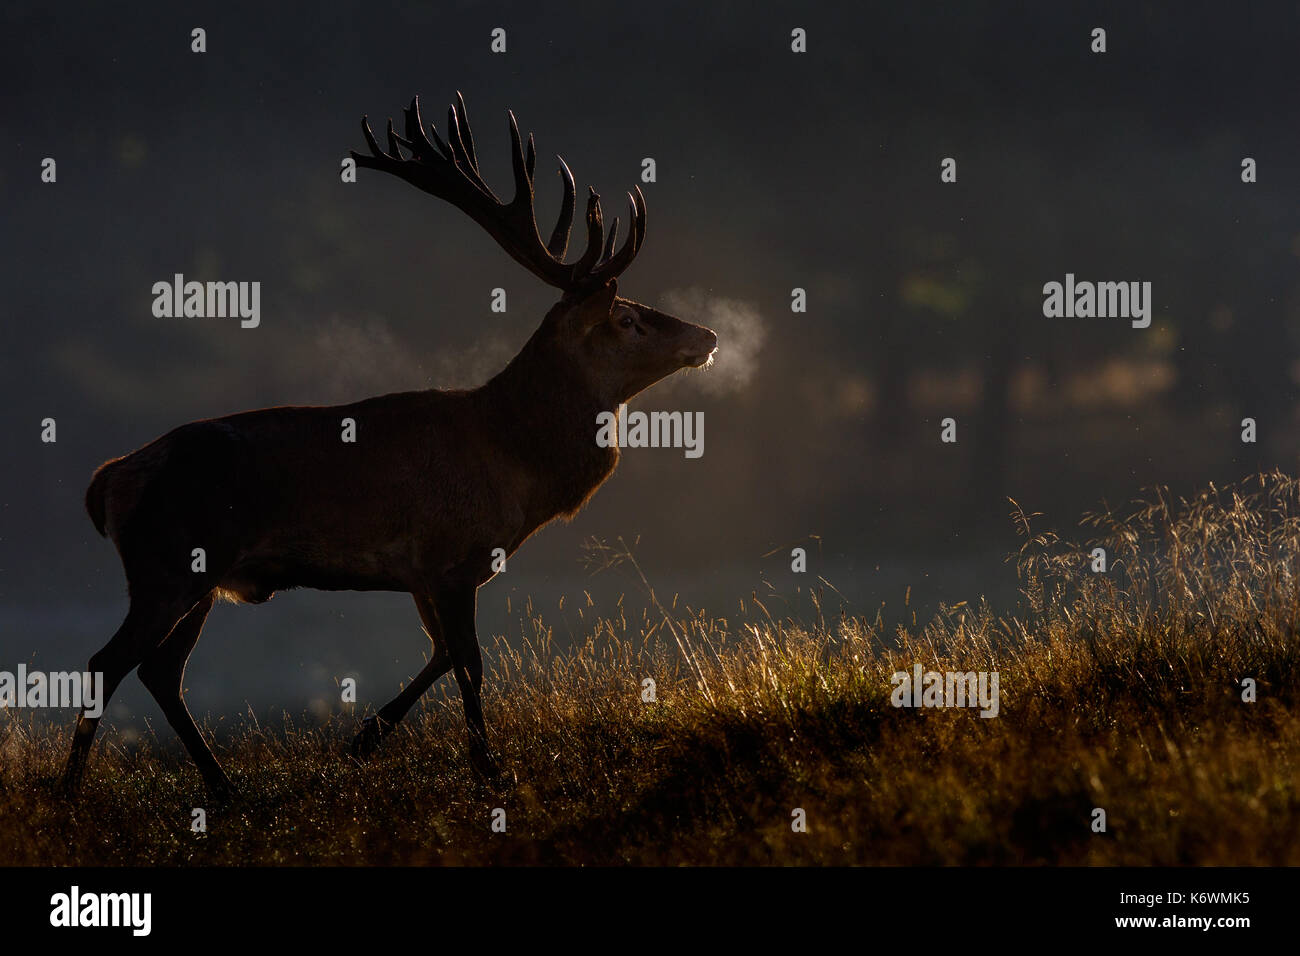 Red deer (Cervus elaphus), backlit, Denmark Stock Photo